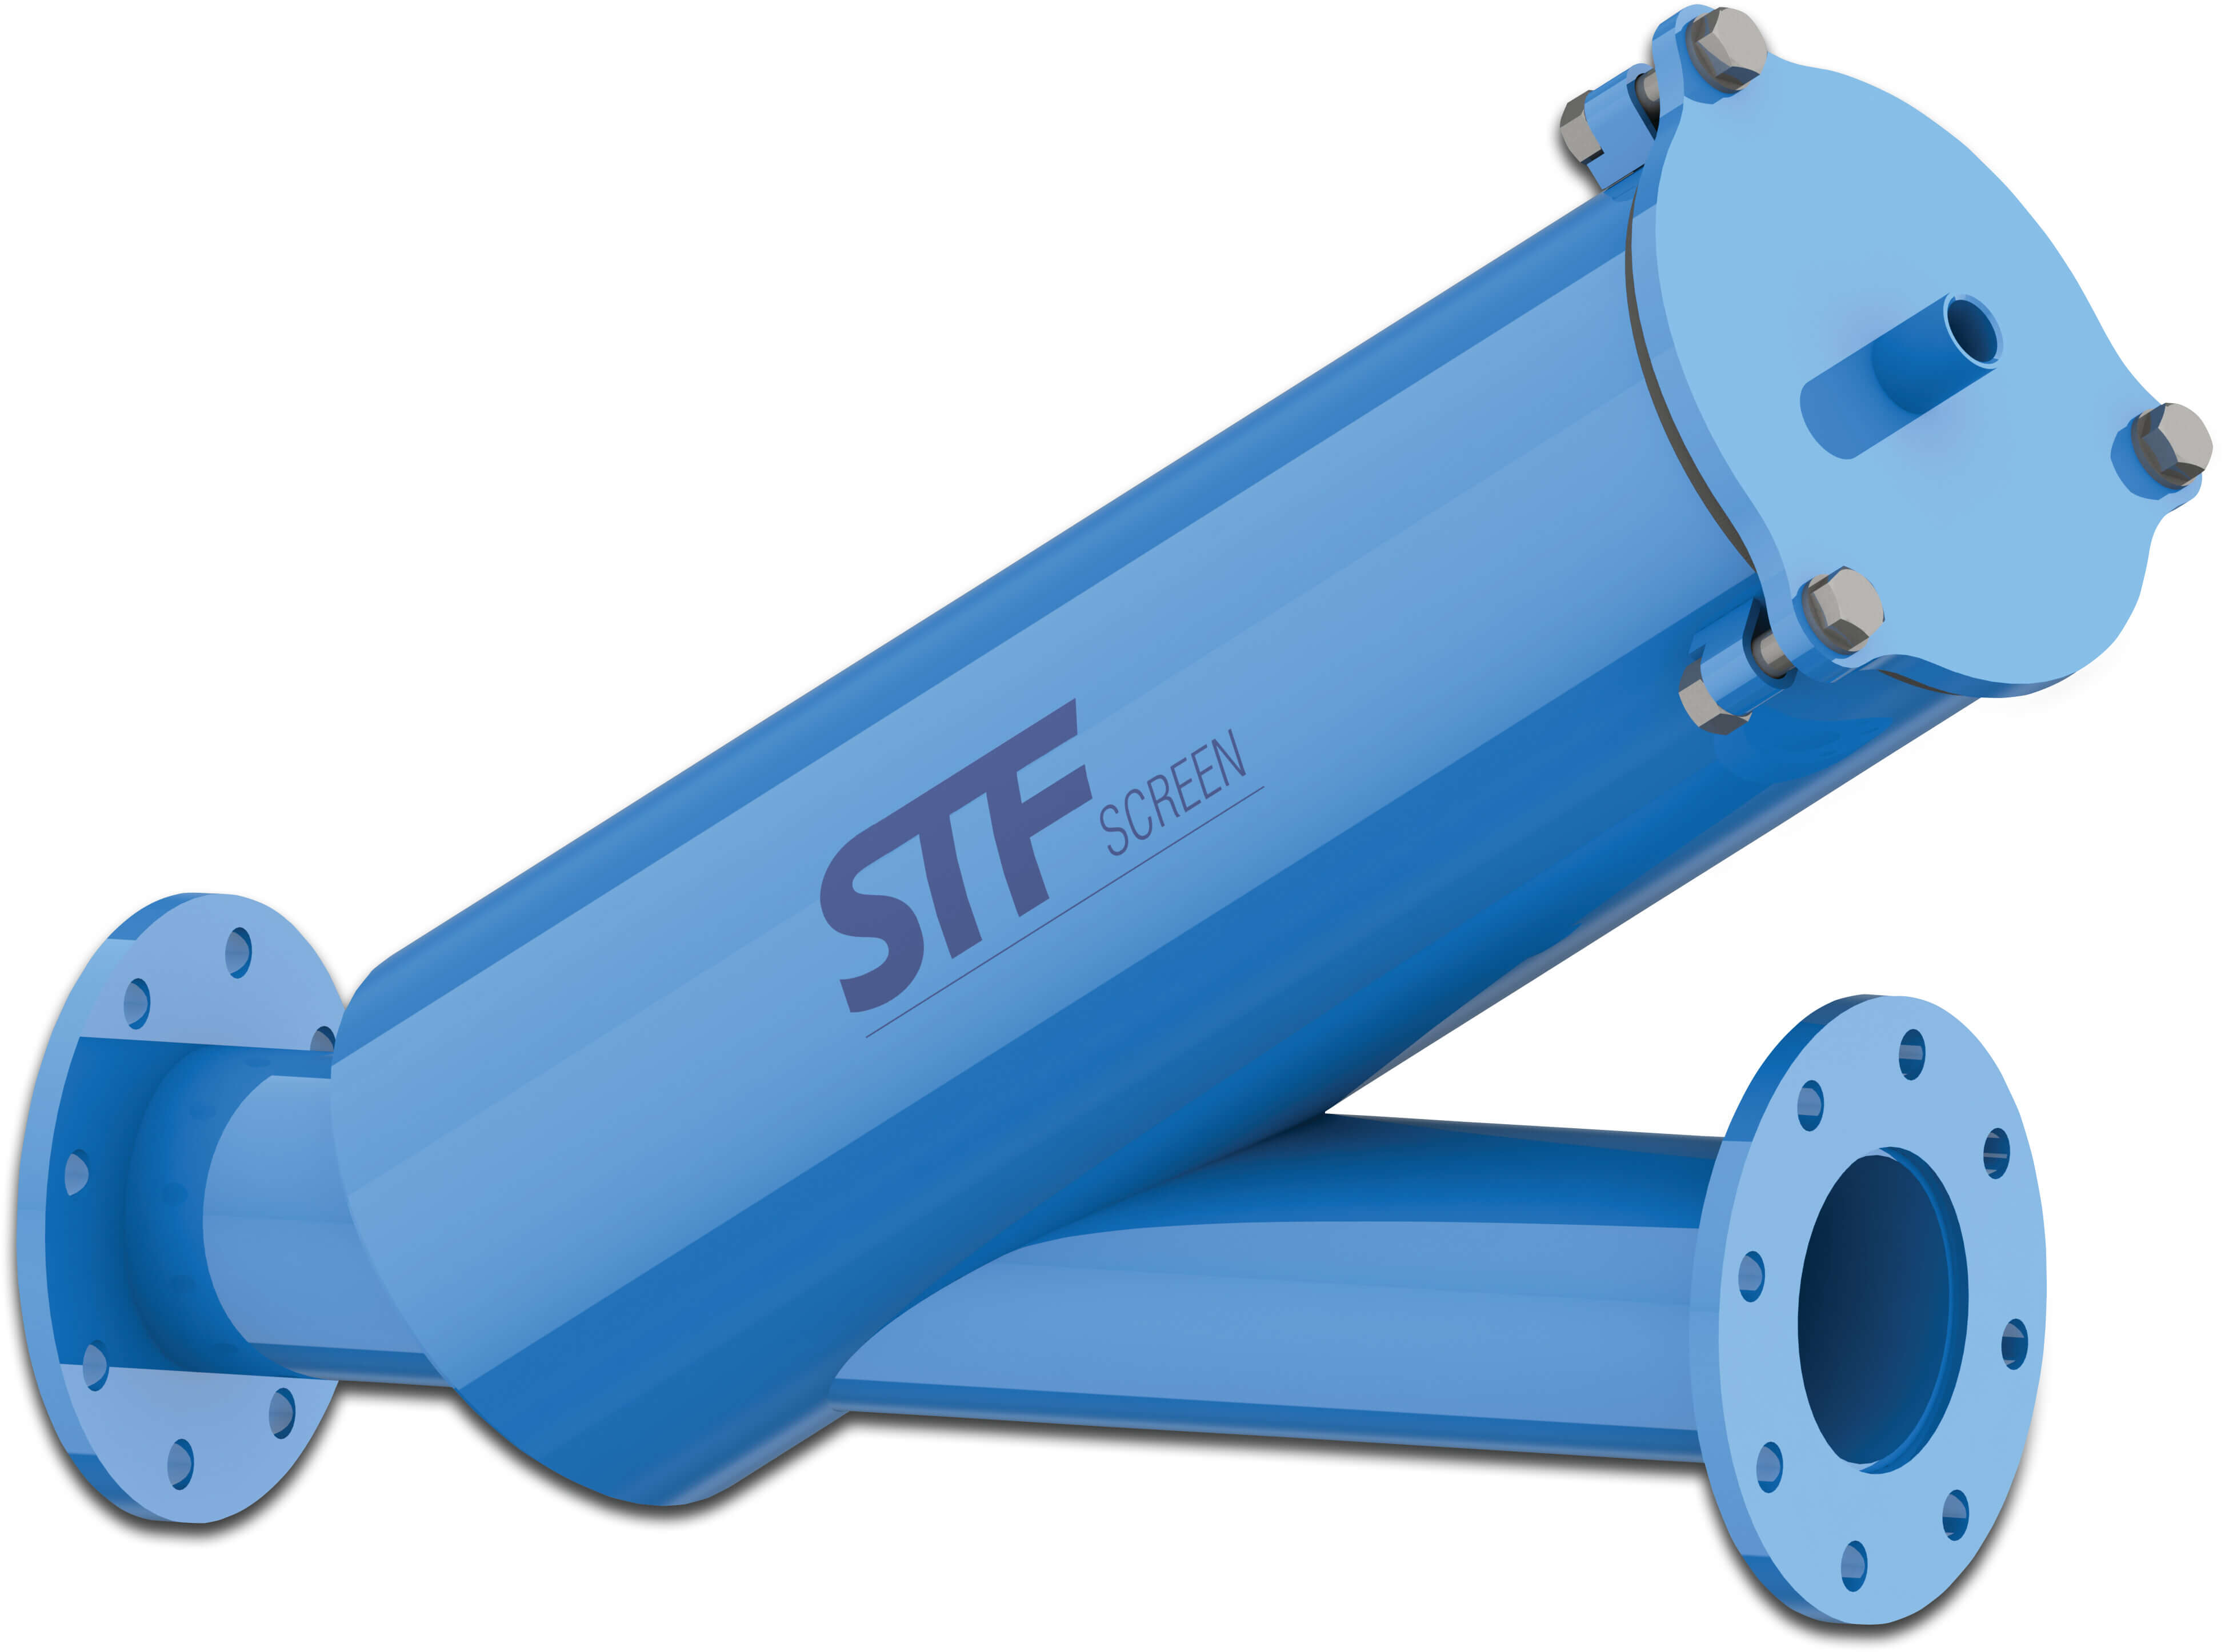 STF Inline-Filter carbon steel ST37.2 Epoxybeschichtung DN80 Flansch 8bar 120micron Edelstahl Gaze Blau type FY-3